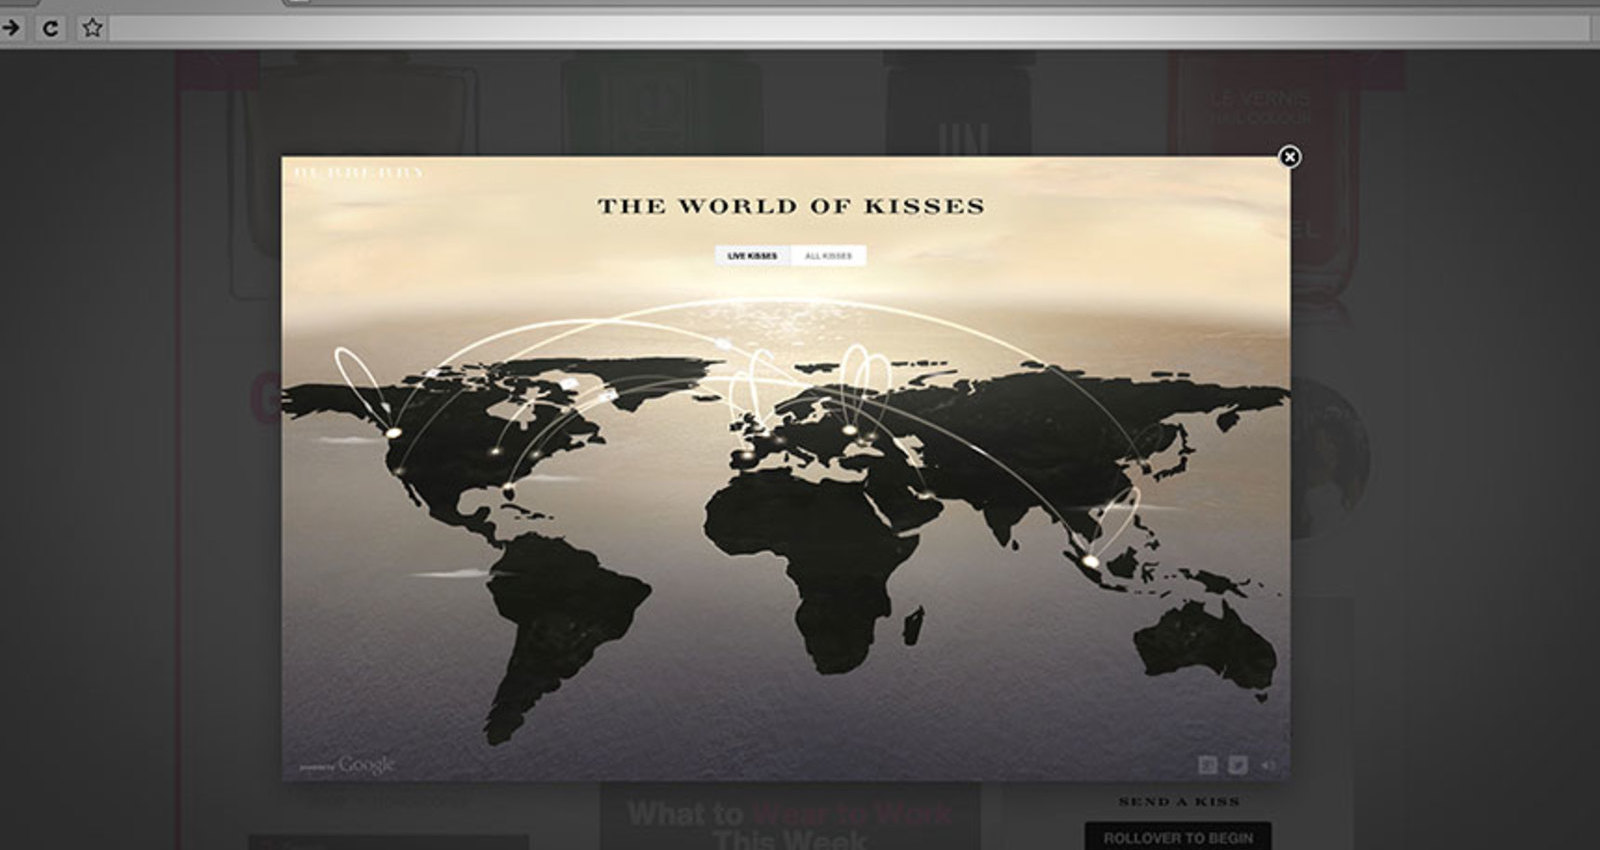 Burberry Kisses: A Google Art, Copy & Code Project